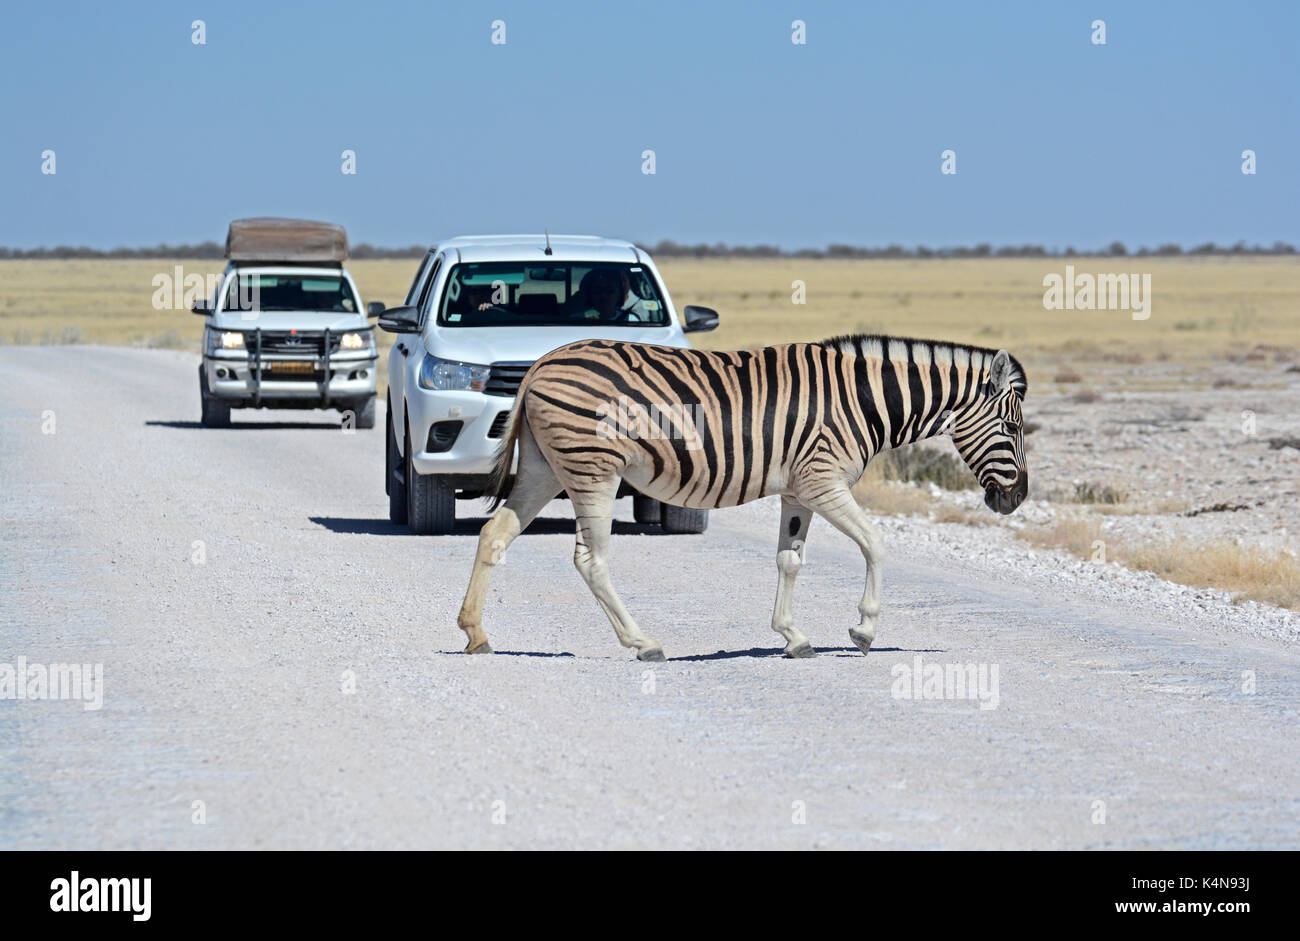 Paso de cebra; un burchell (llanuras) zebra cruza la carretera en el Parque Nacional Etosha, causando un poco de un atasco de tráfico. Foto de stock